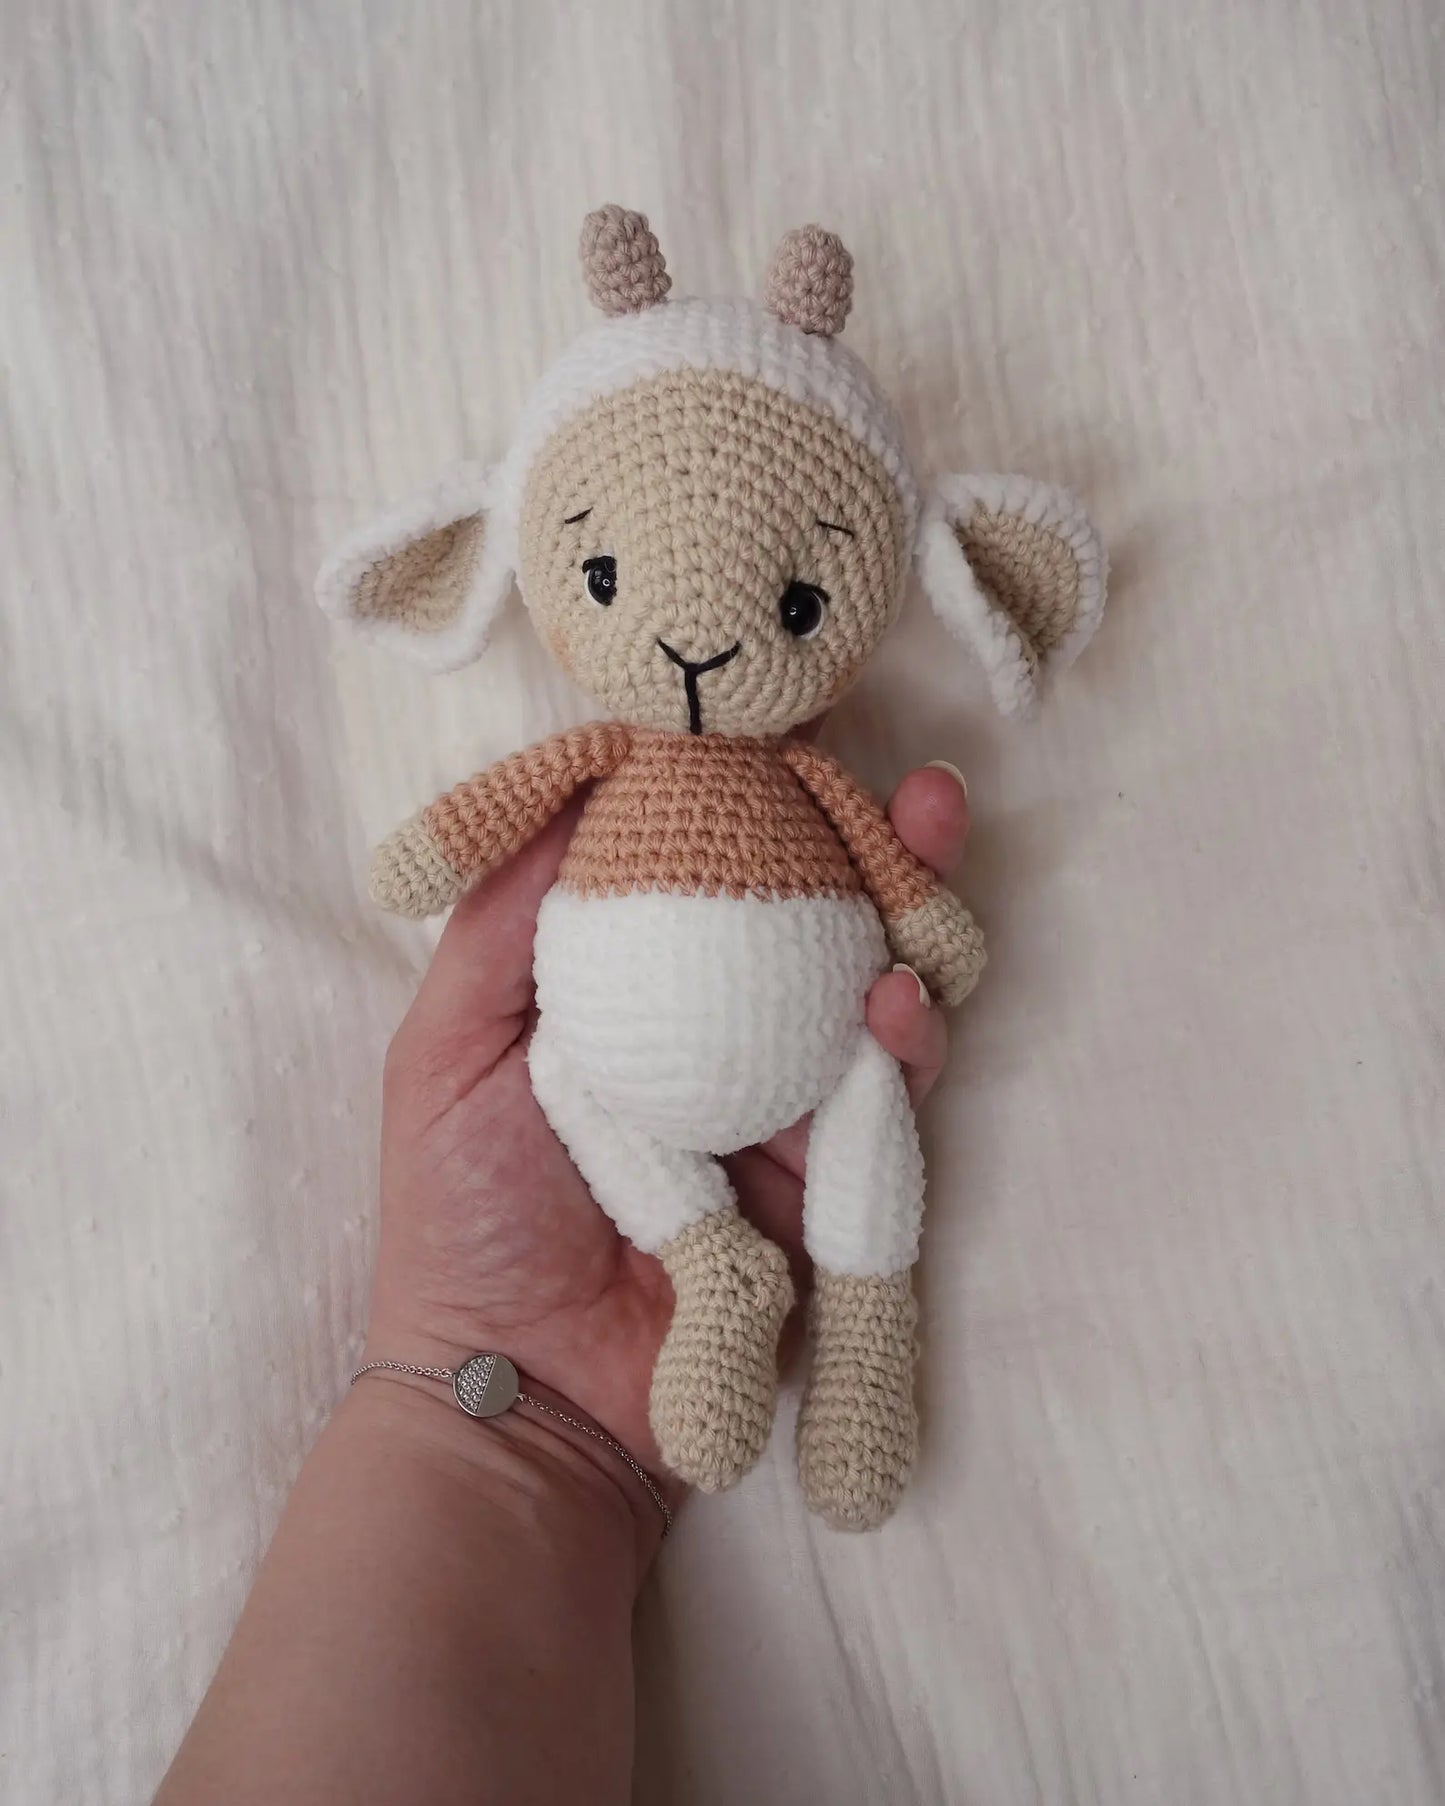 Pelote the Little Lamb Crochet Pattern